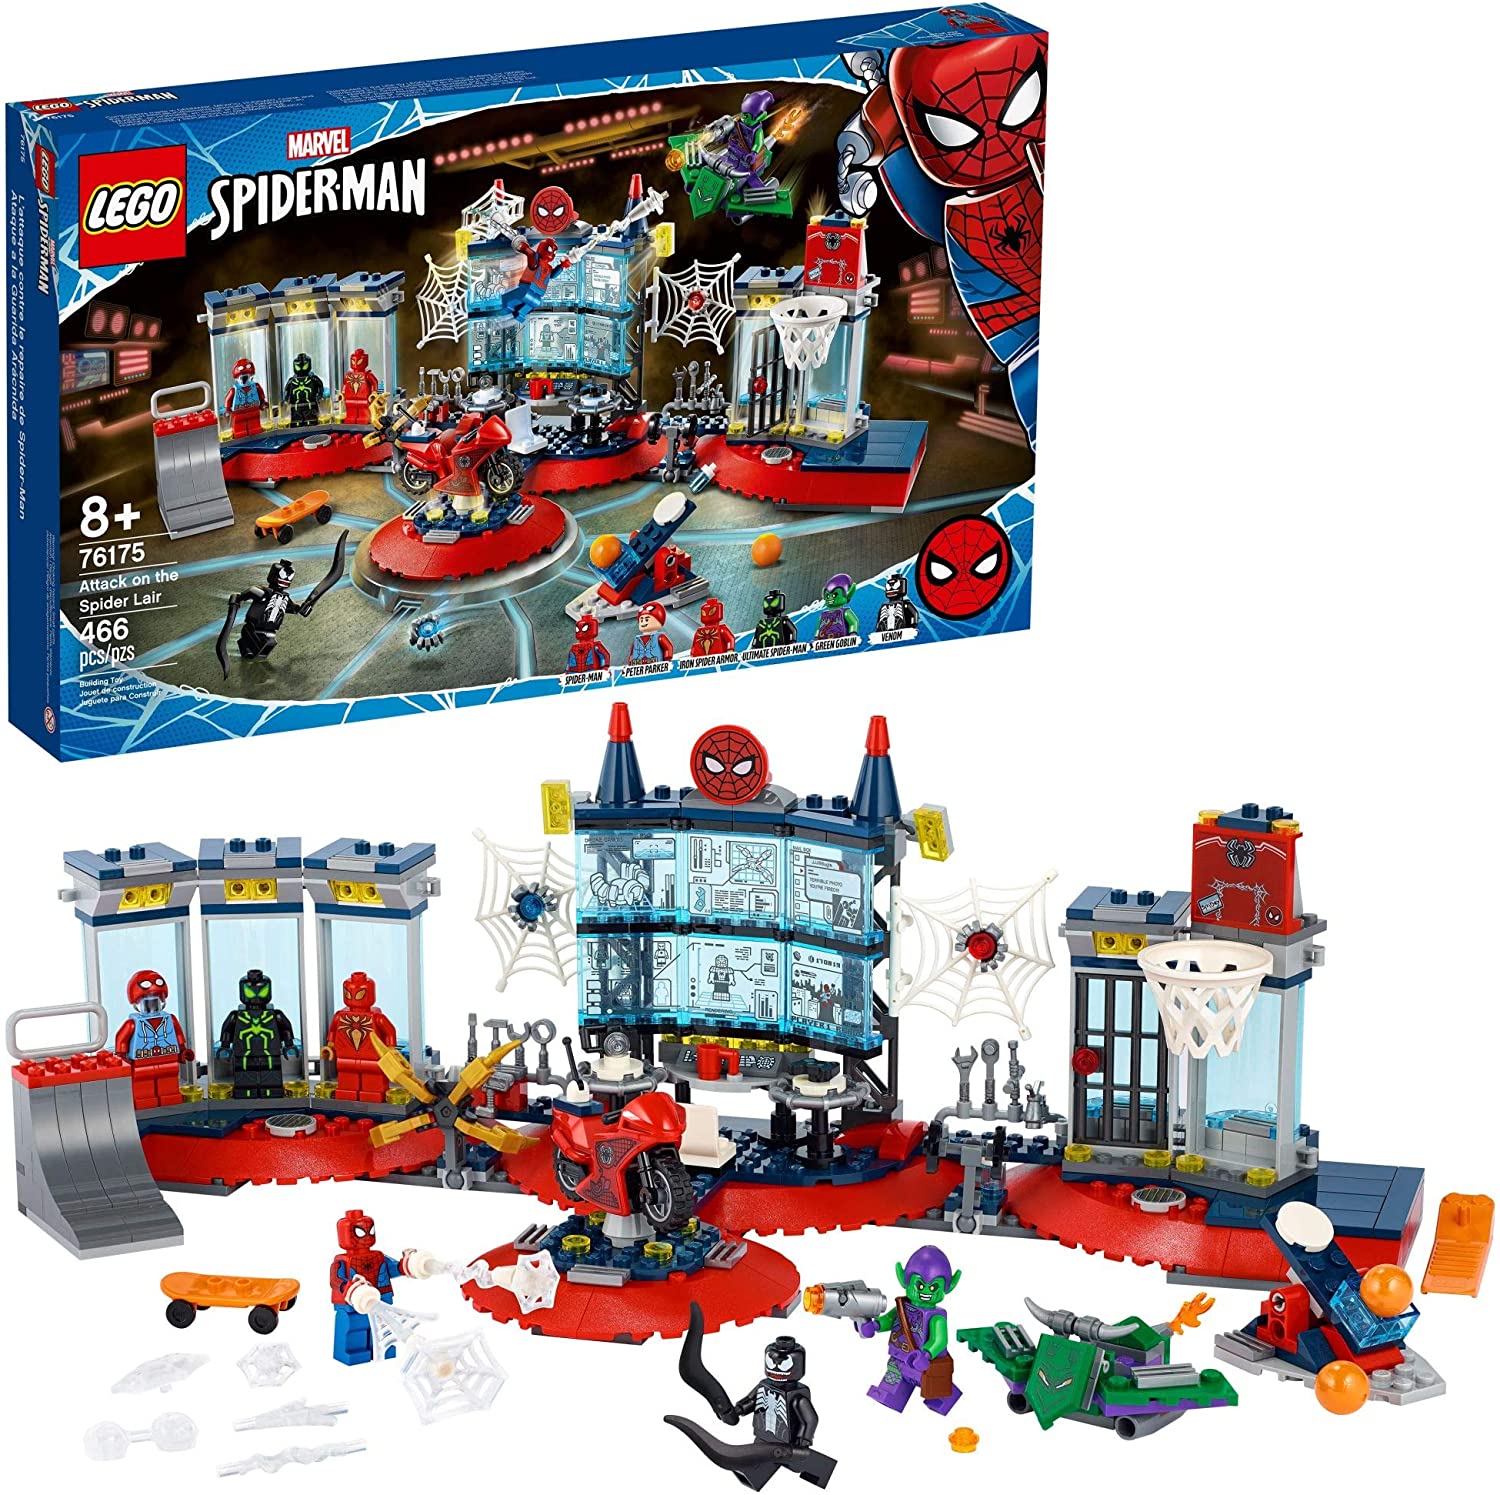 LEGO Marvel's Spider-Man Attacks the Spider's Lair 76175 Đồ chơi xây dựng  tuyệt vời, có trụ sở của Người Nhện; bao gồm Người Nhện, Quỷ xanh và các  nhân vật nhỏ Venom,